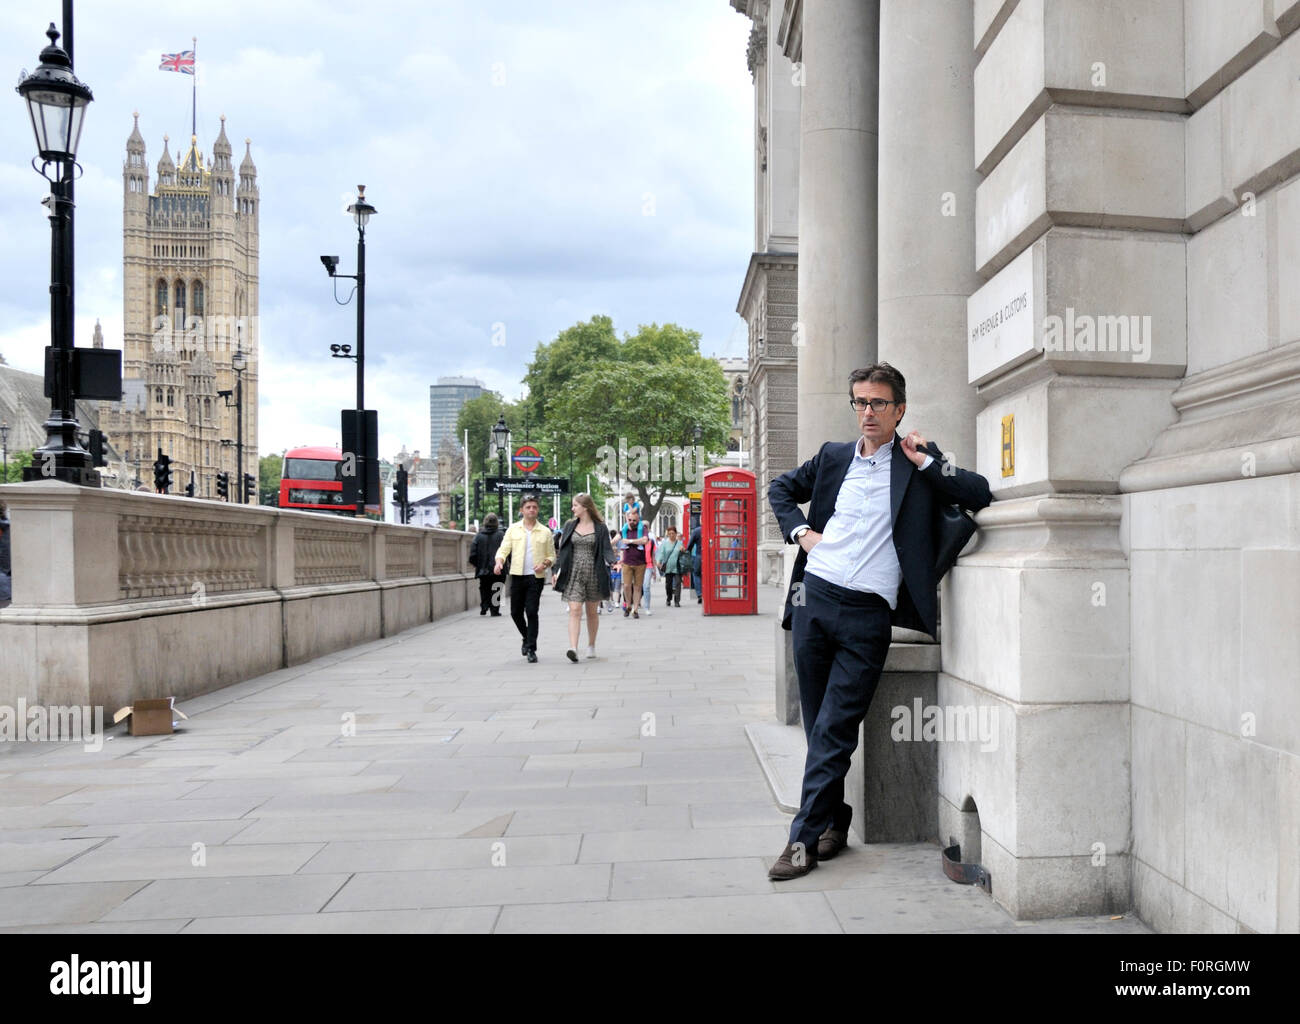 Londra, Inghilterra, Regno Unito. Robert Peston - Editor politico di ITV News - a H M entrate e edificio doganale in Whitehall, Westminster Foto Stock